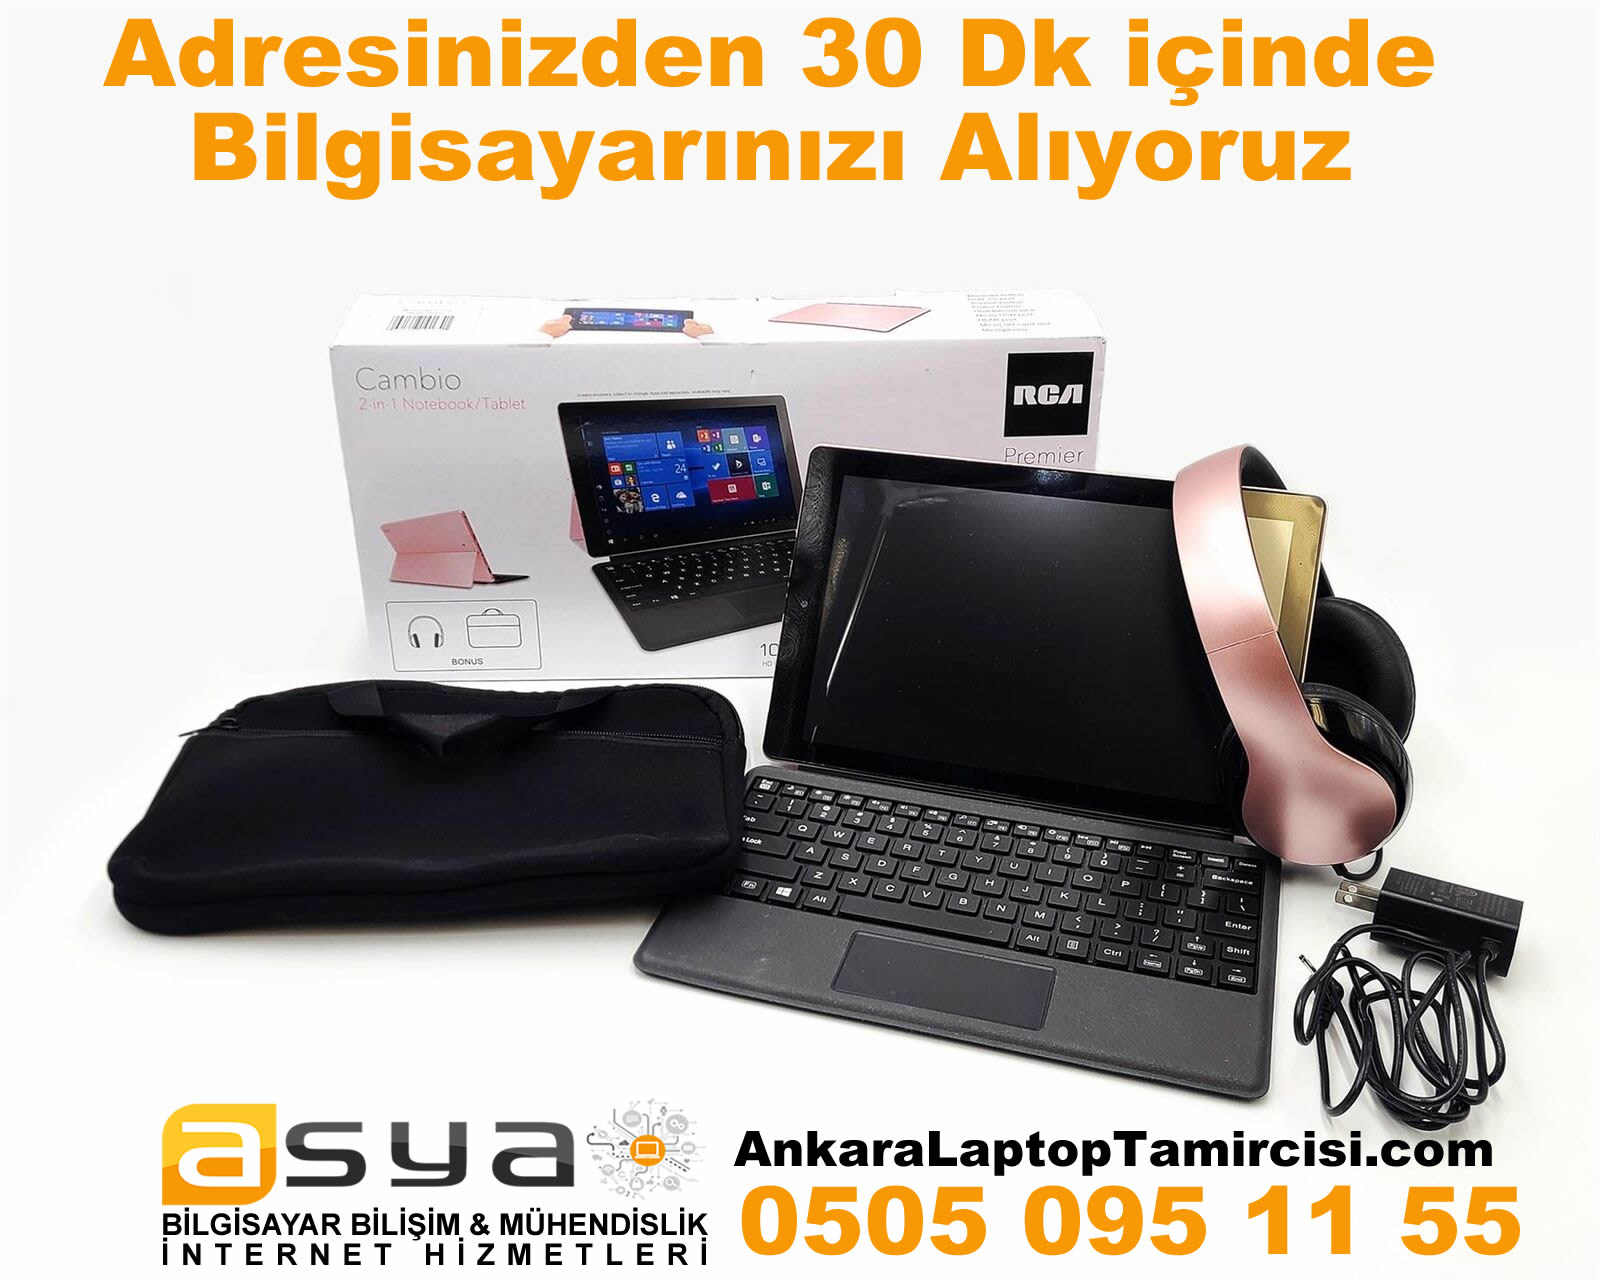 Ankara Laptop Bilgisayar Televizyon Alıyoruz 